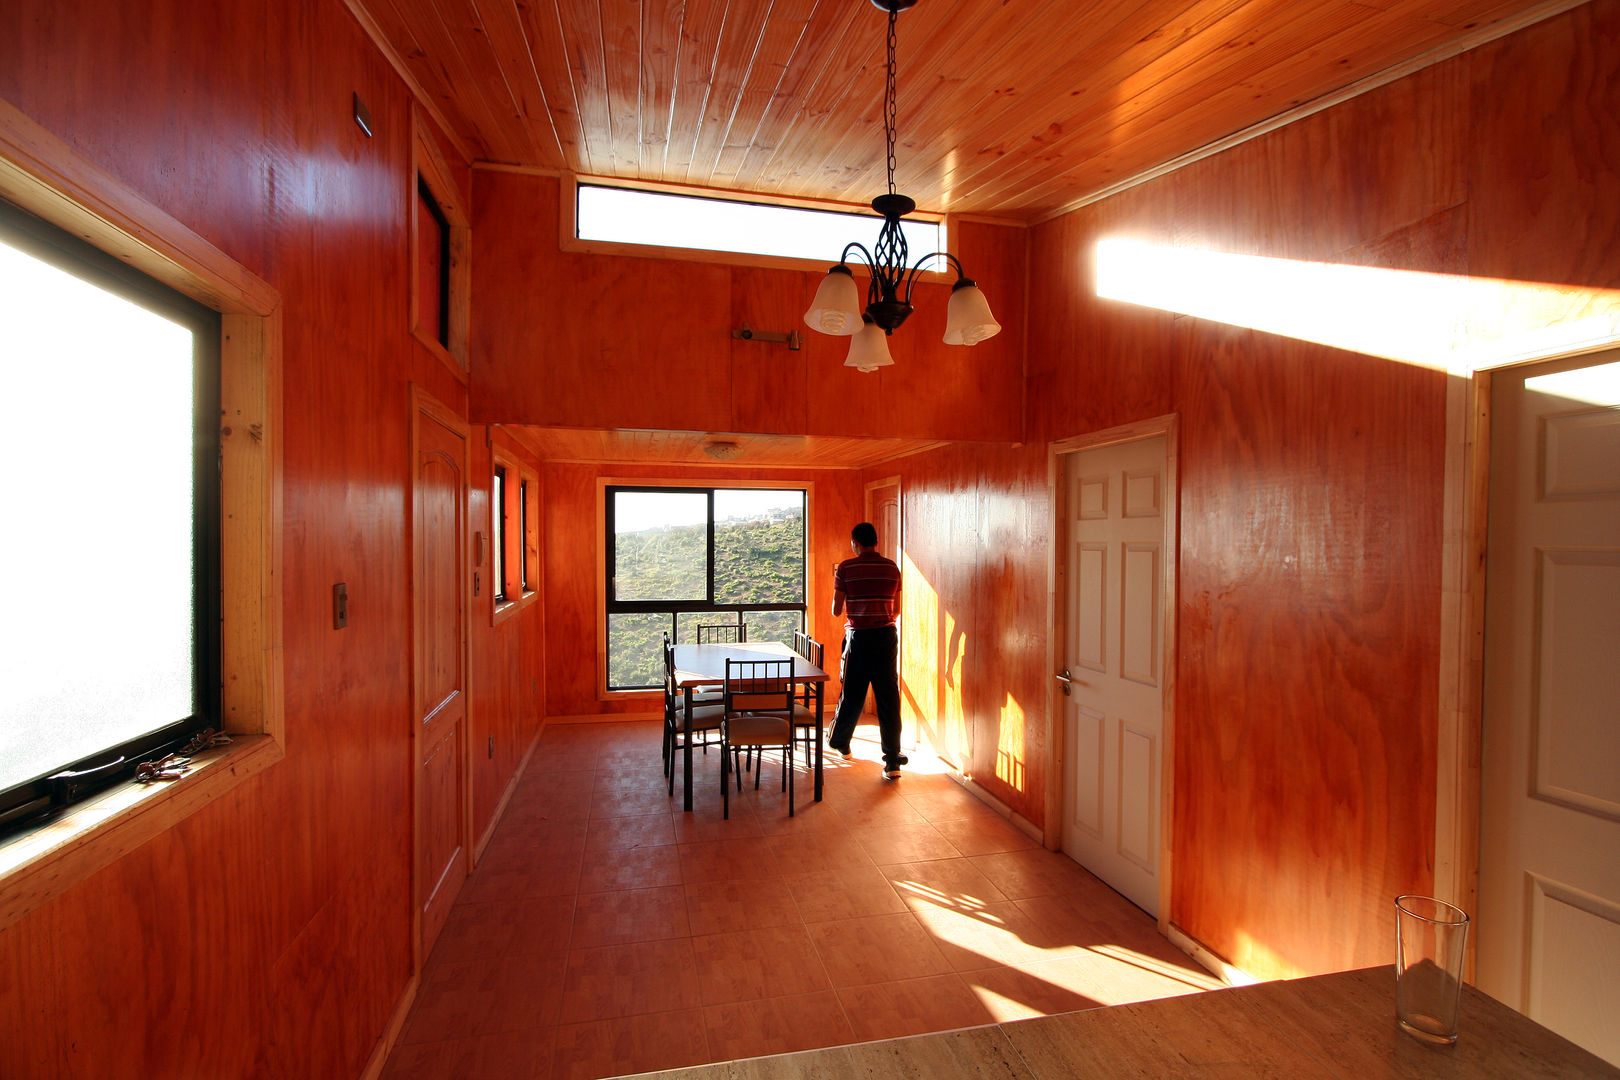 Interior de la vivienda Arq2g Comedores de estilo moderno Madera Acabado en madera